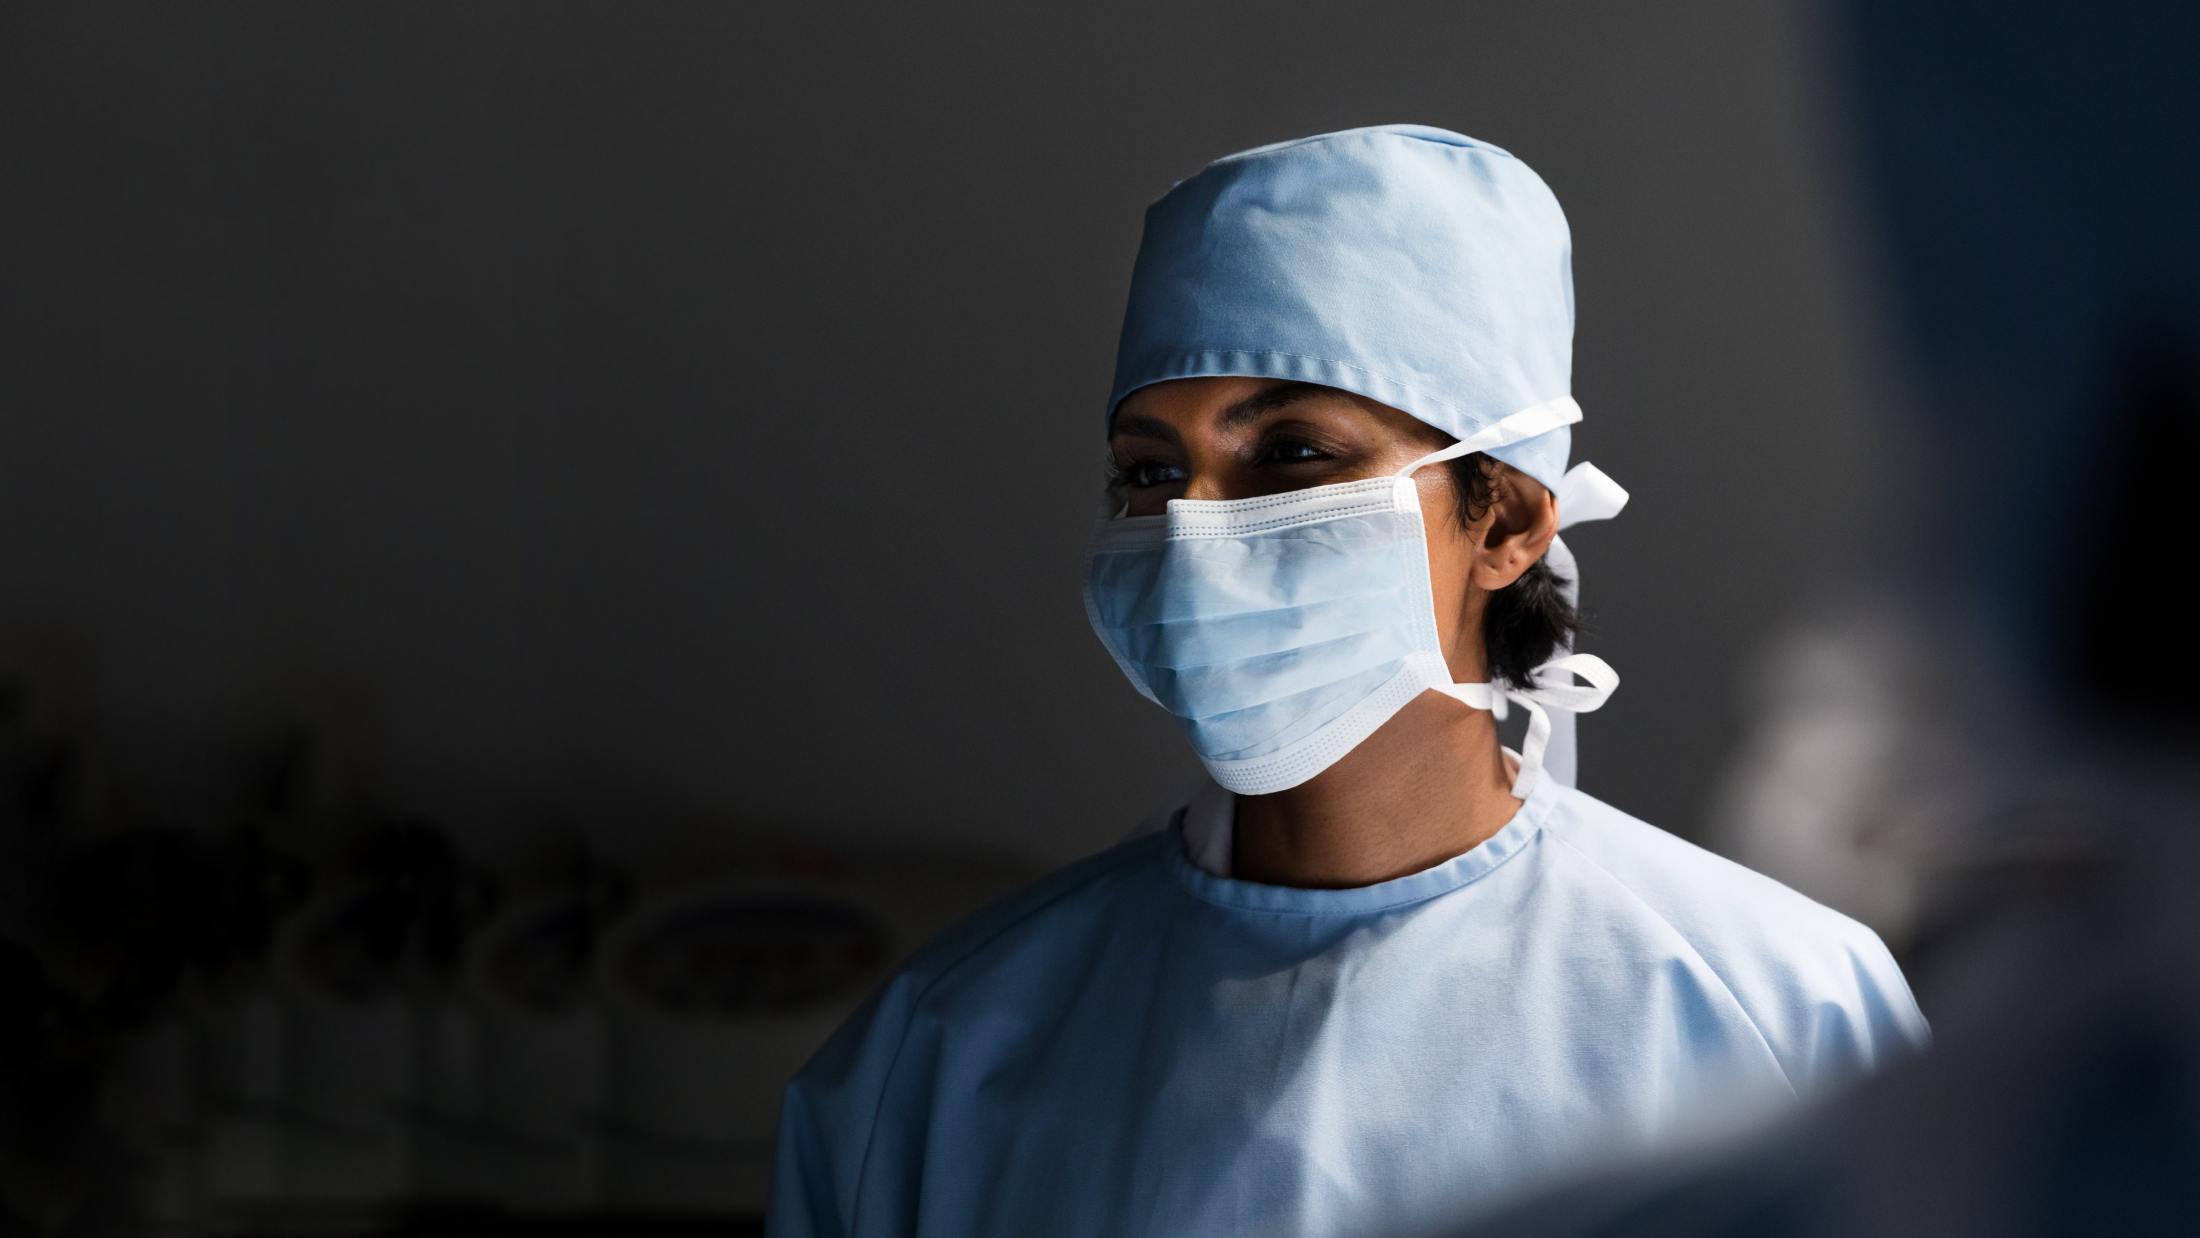 Surgeon wearing face mask